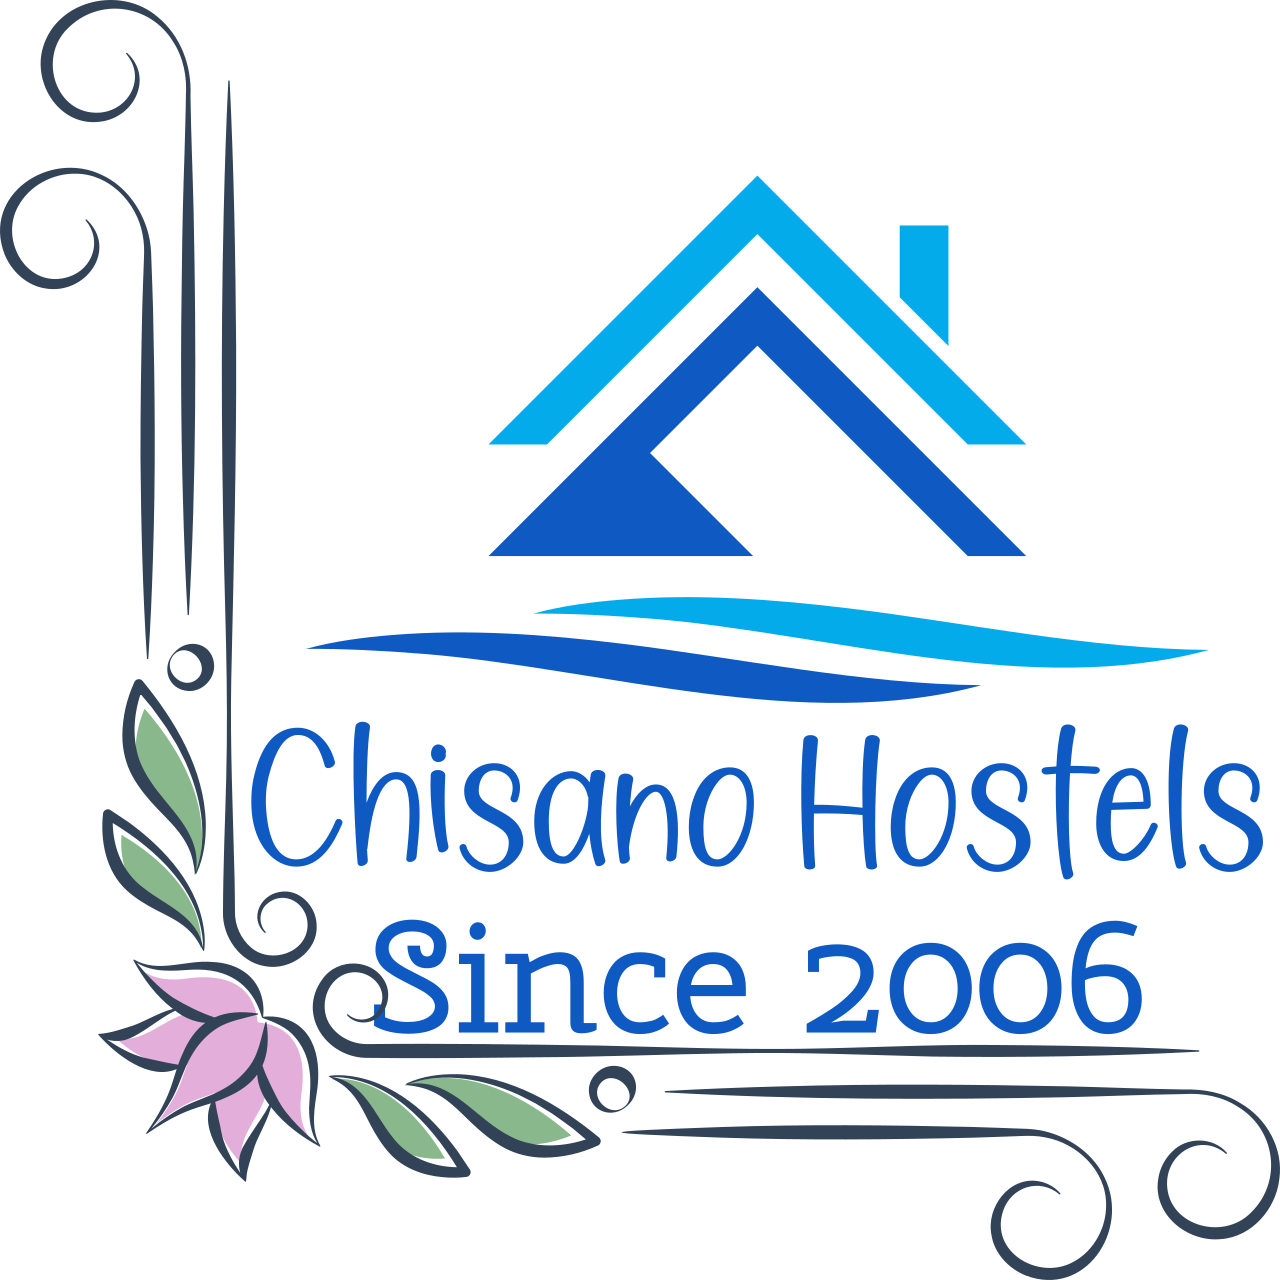 Chisano Hostels's logo